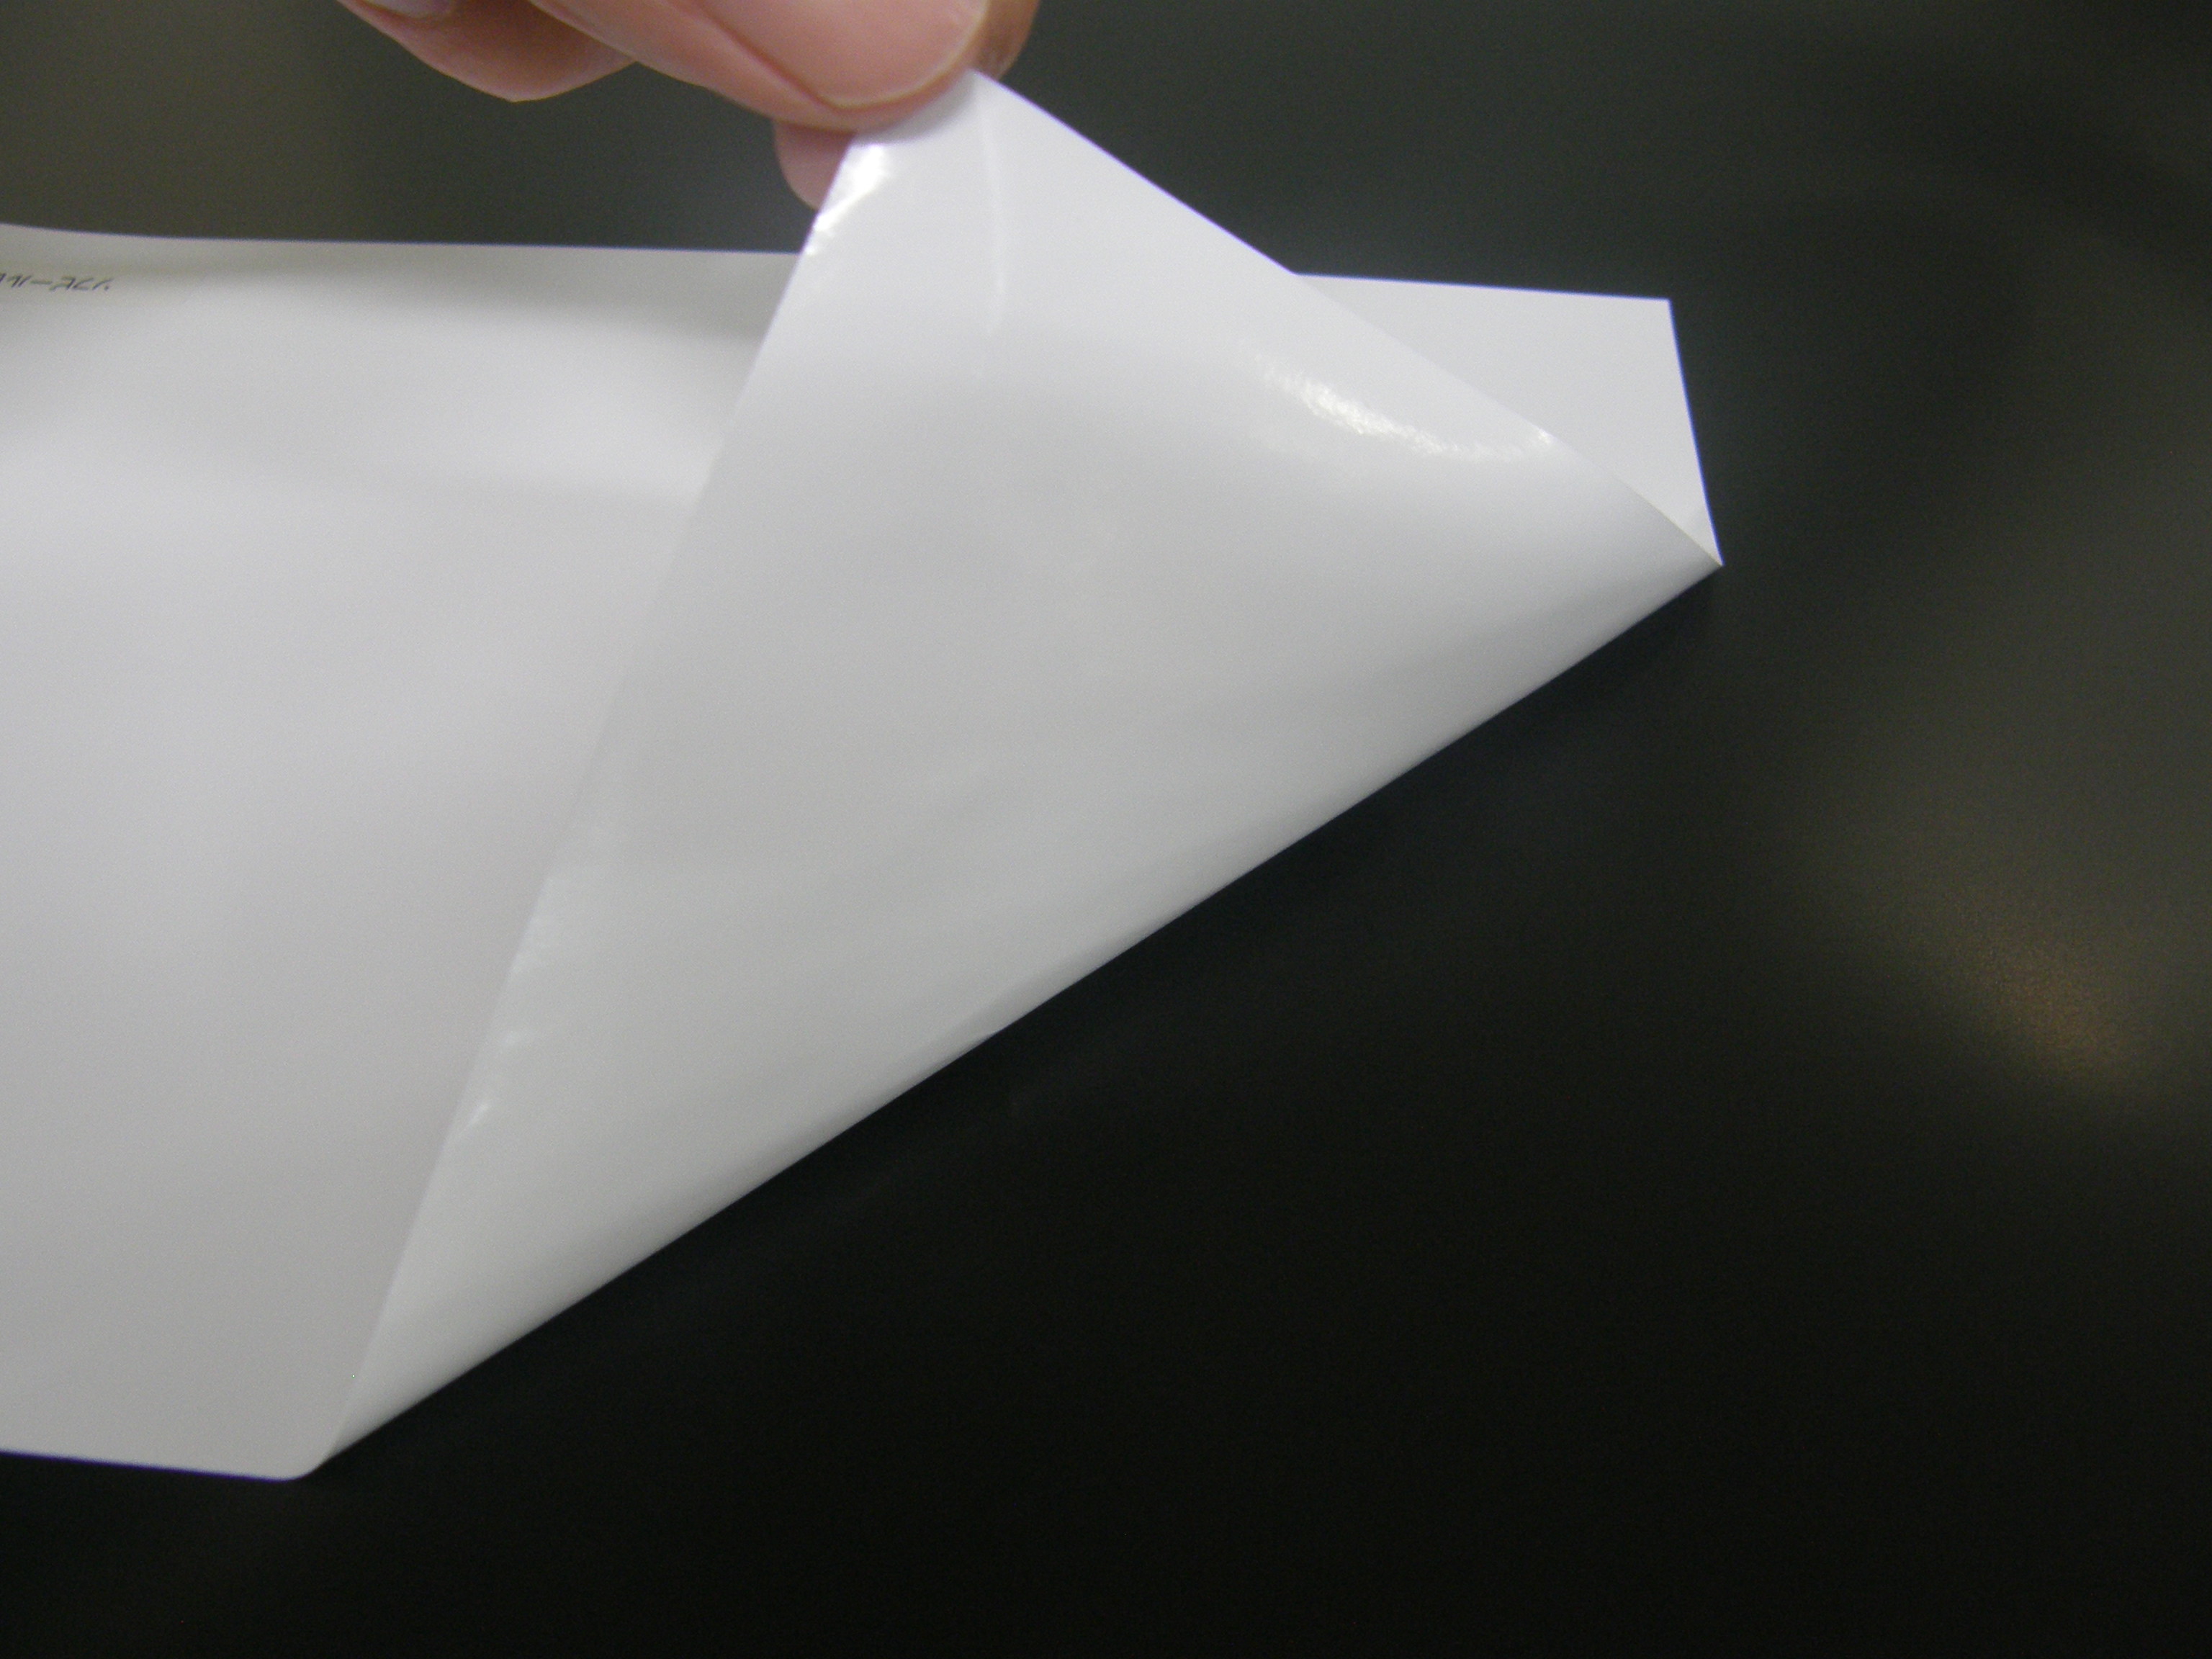 「非塩ビ印刷材料」環境負荷の少ないラベル素材のご紹介